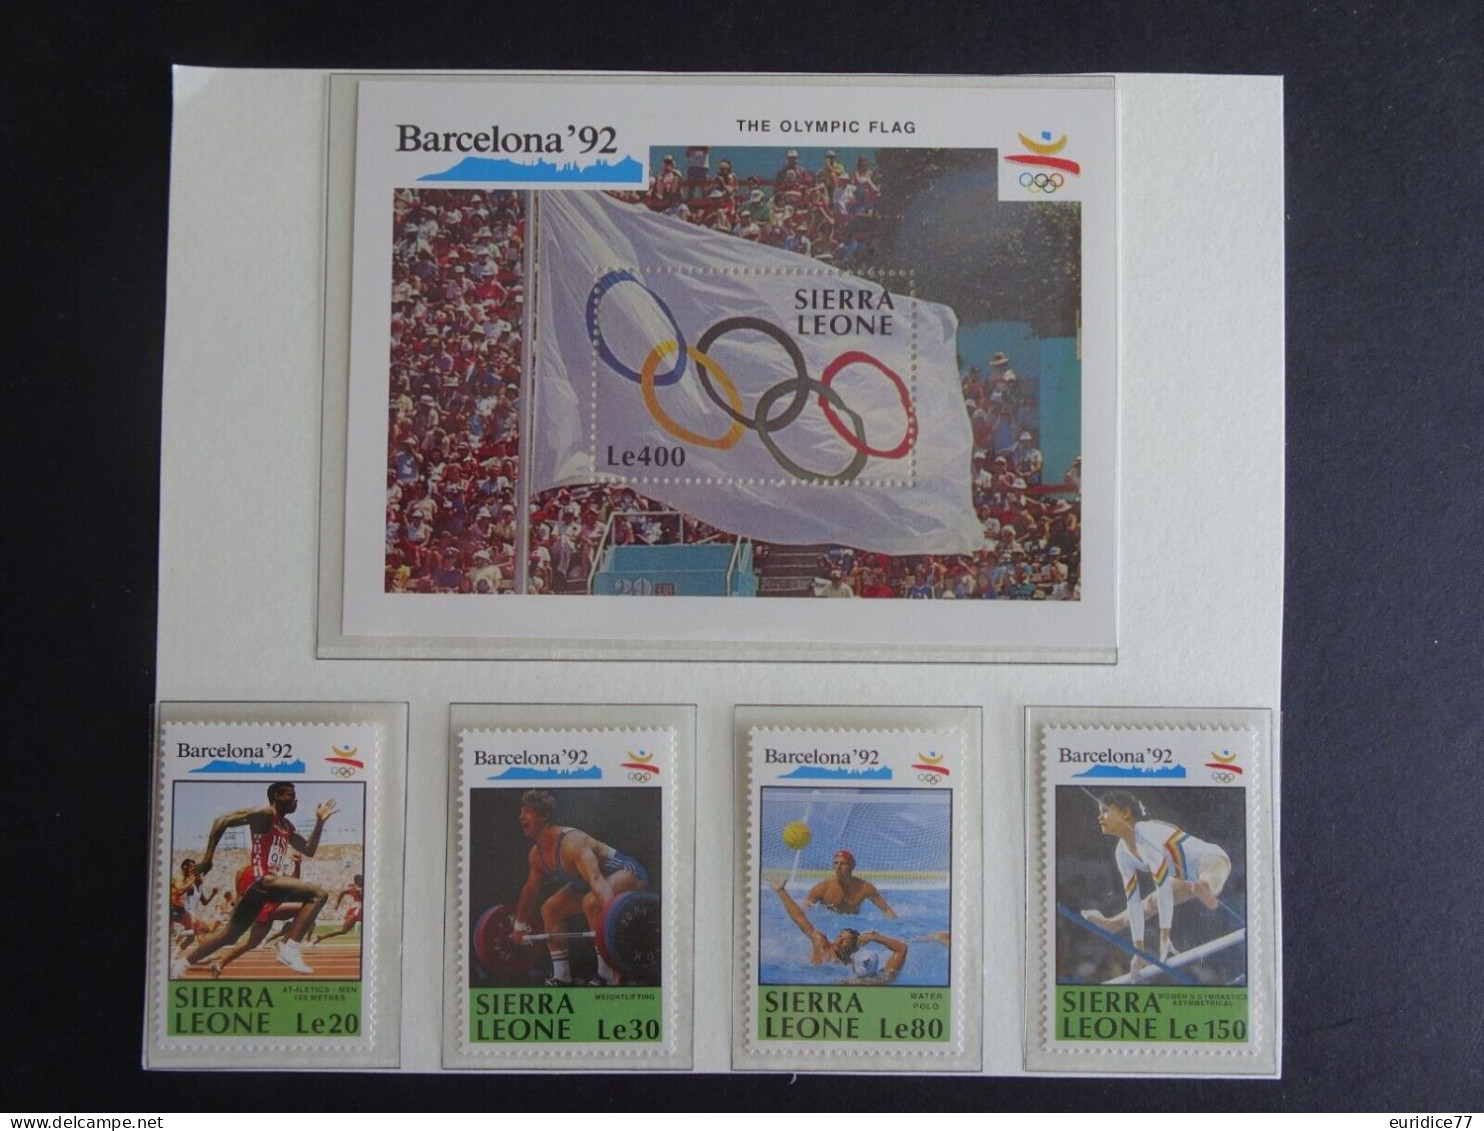 Sierra Leone 1990 - Olympic Games Barcelona 92 Mnh** - Sommer 1992: Barcelone